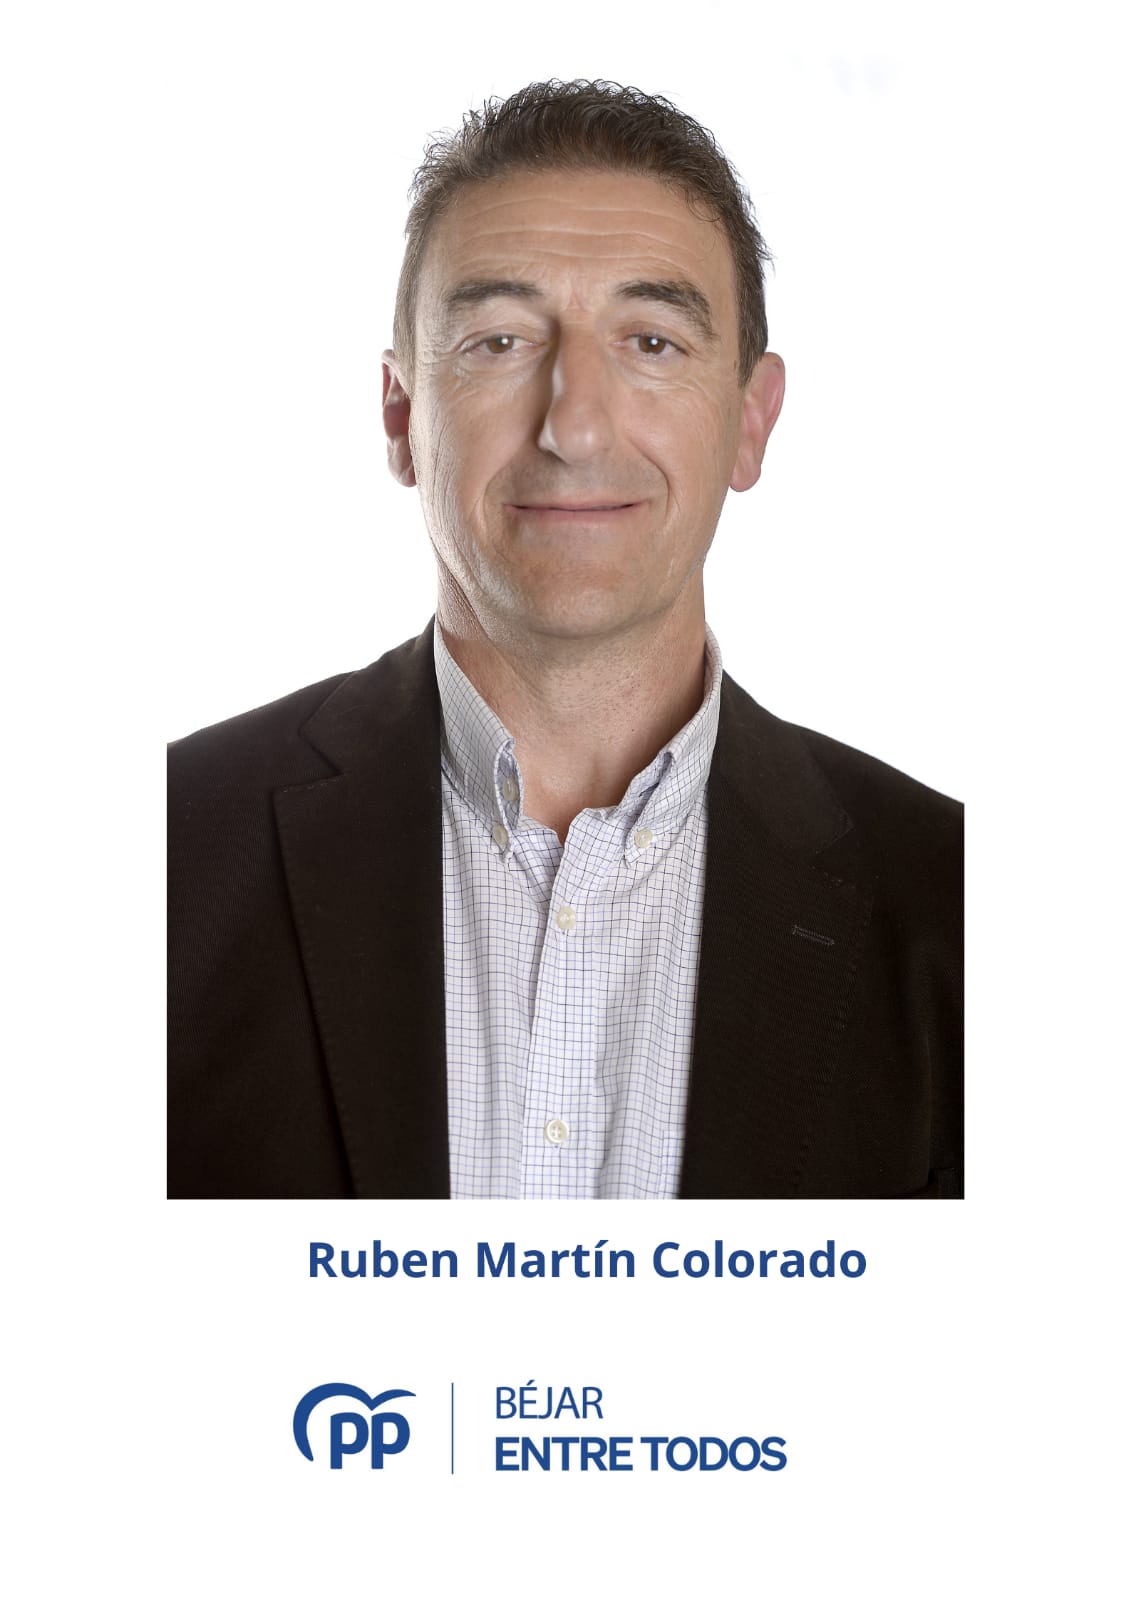 Rubén Martin Colorado